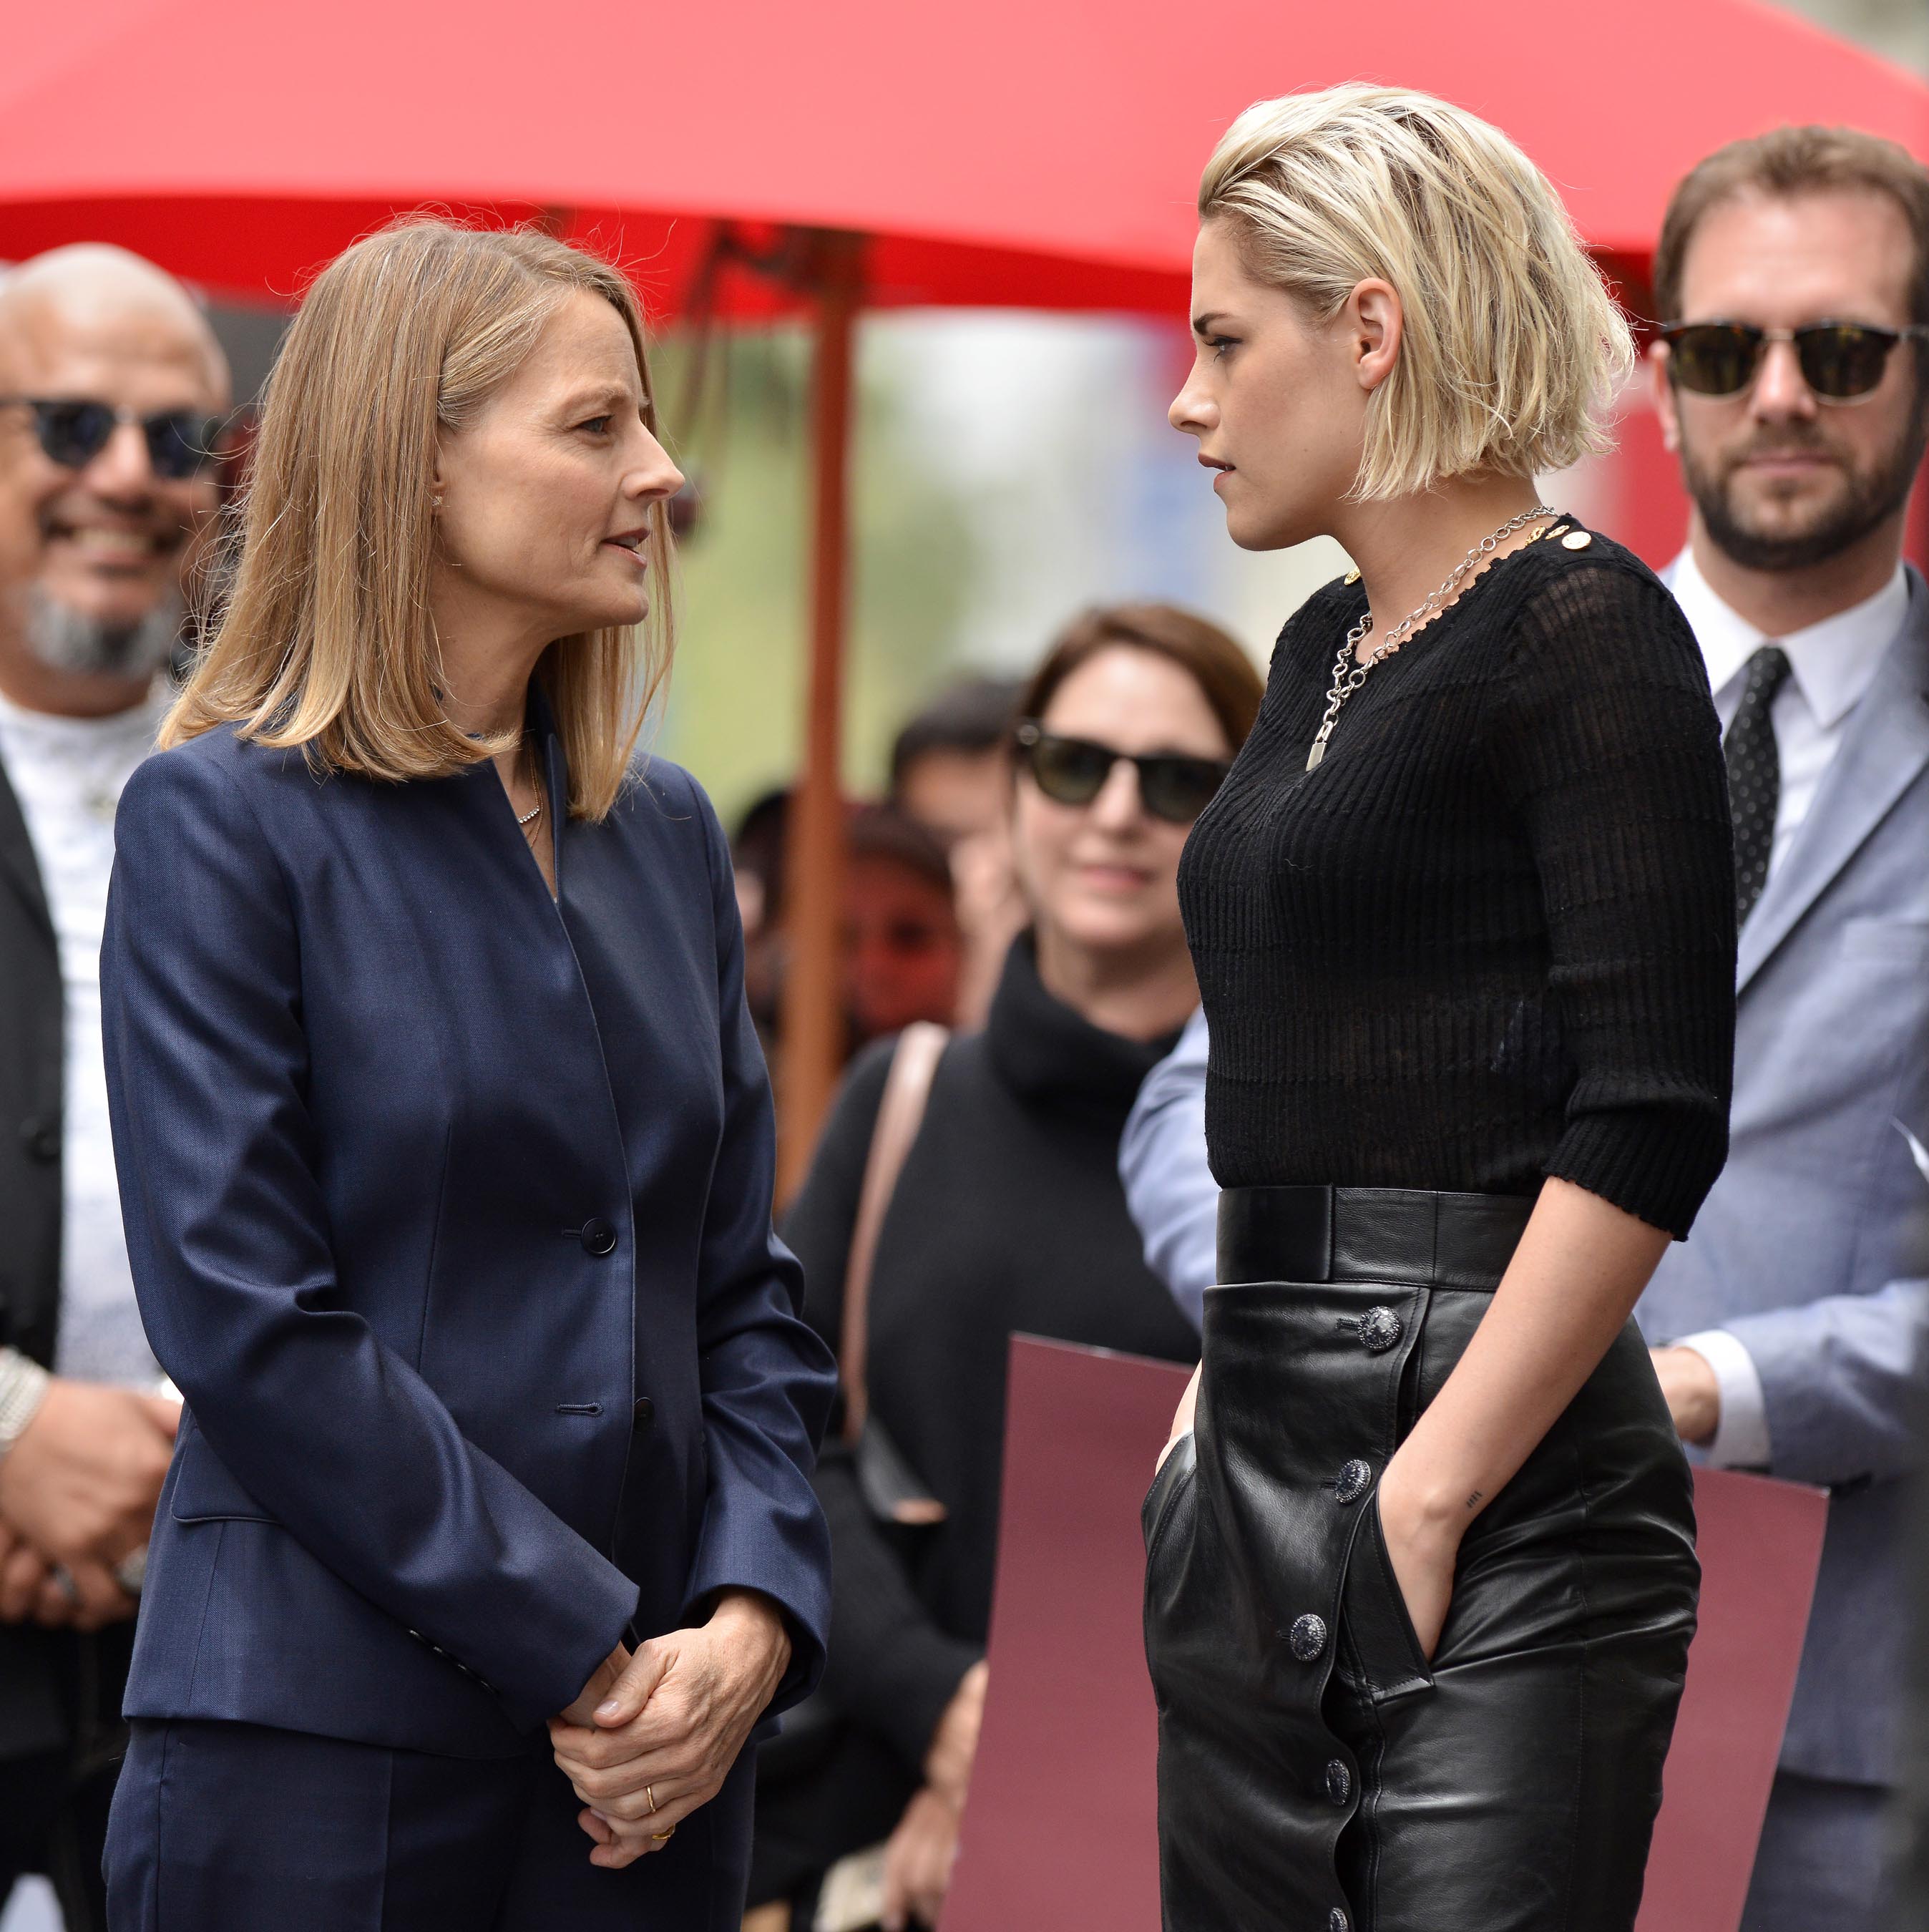 Kristen Stewart attends Jodie Foster’s “Walk Of Fame” Ceremony